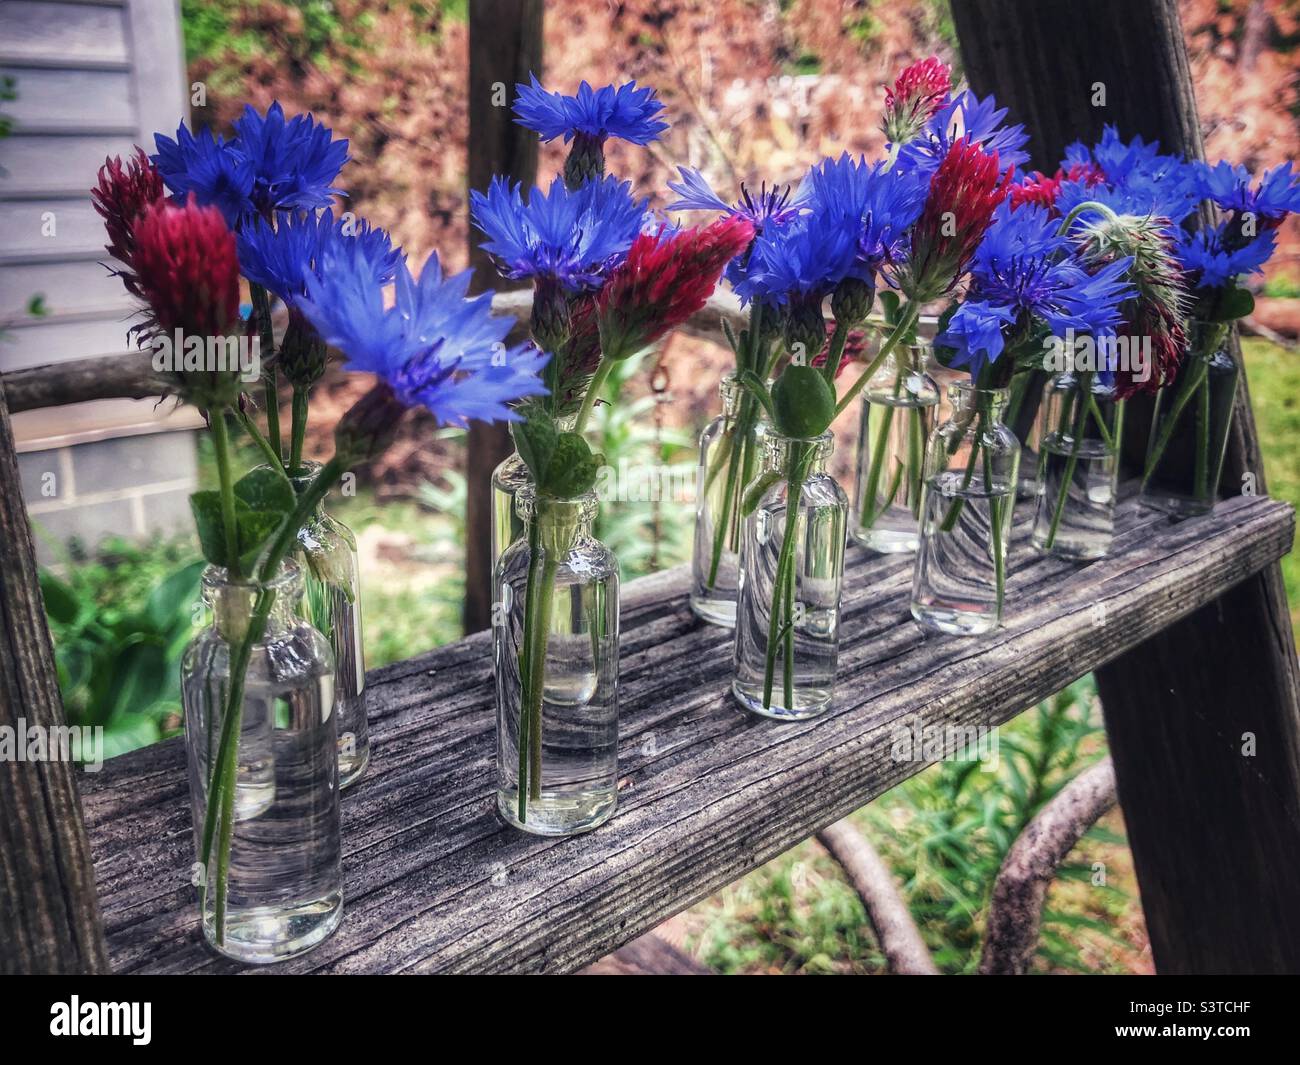 Rouge, blanc et bleu dans de minuscules flacons en verre alignés sur un échelon du jardin Banque D'Images